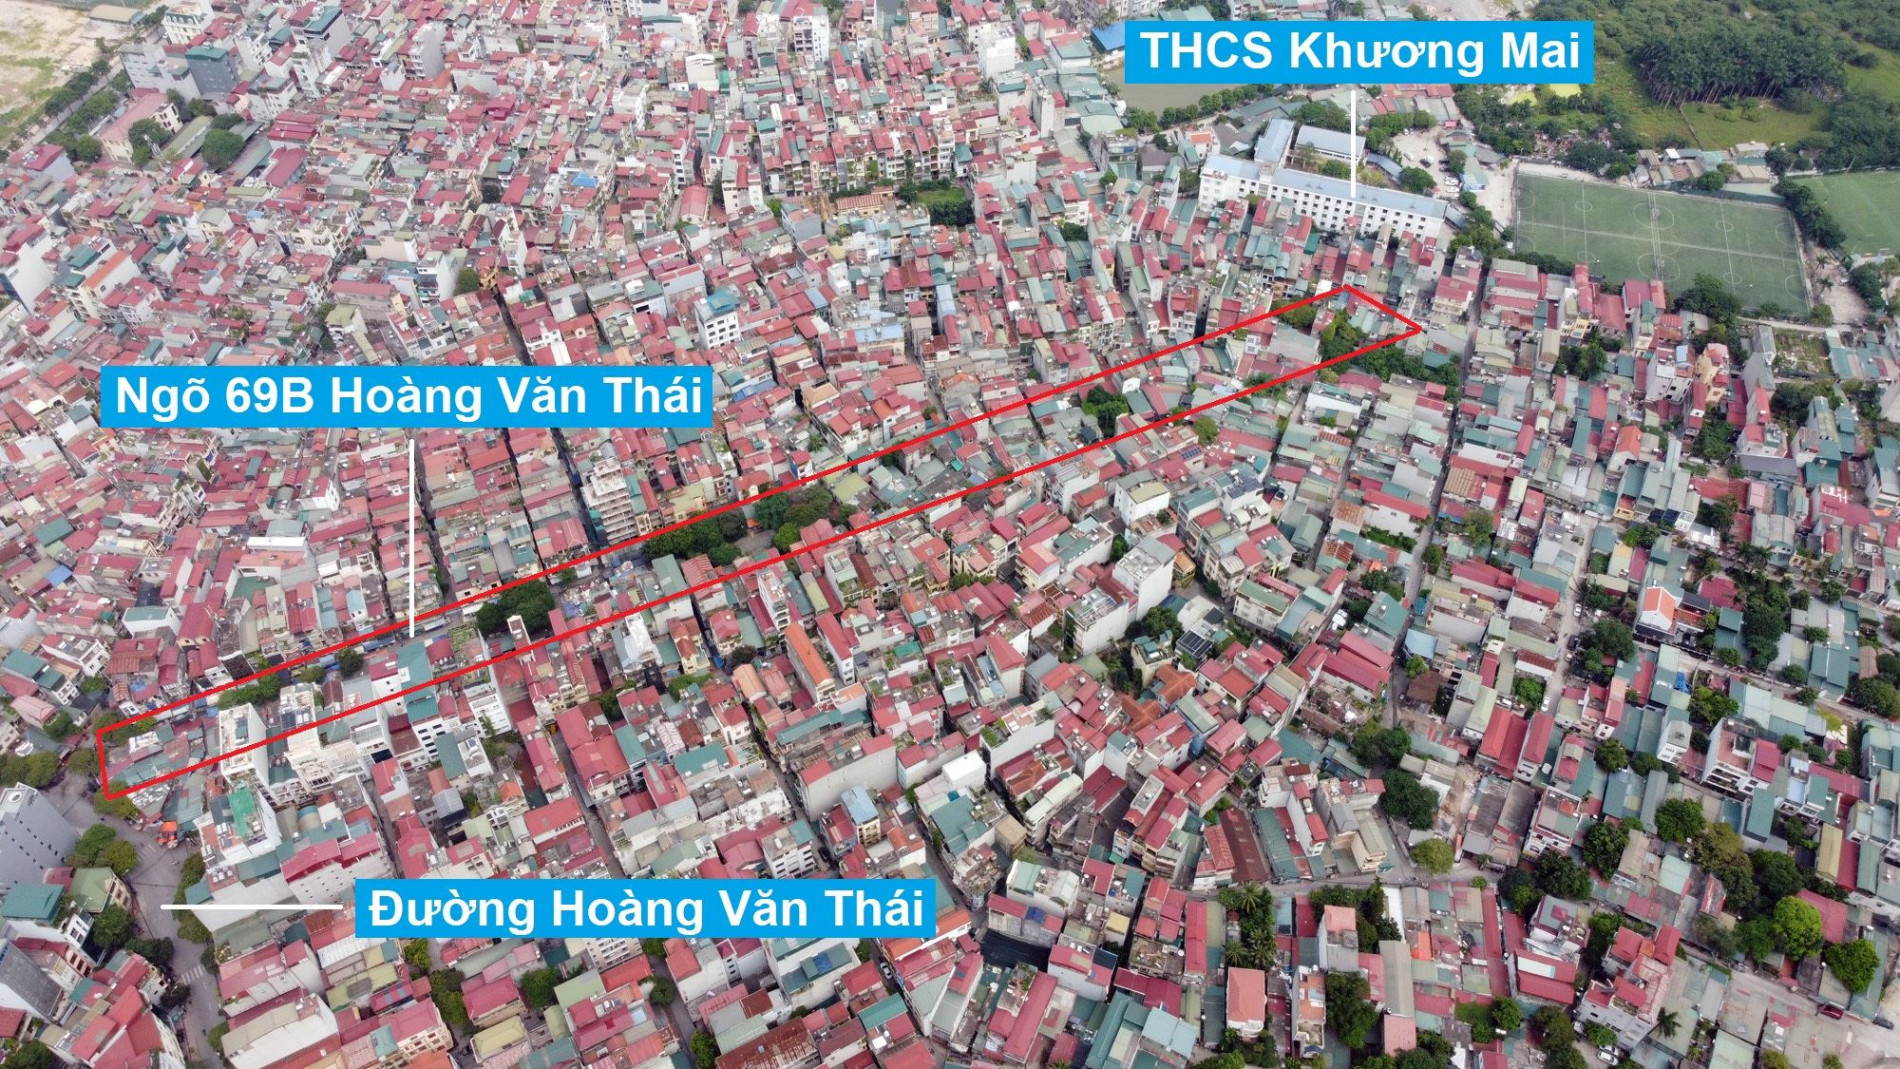 Đường sẽ mở theo quy hoạch ở phường Khương Trung, Thanh Xuân, Hà Nội (phần 3)